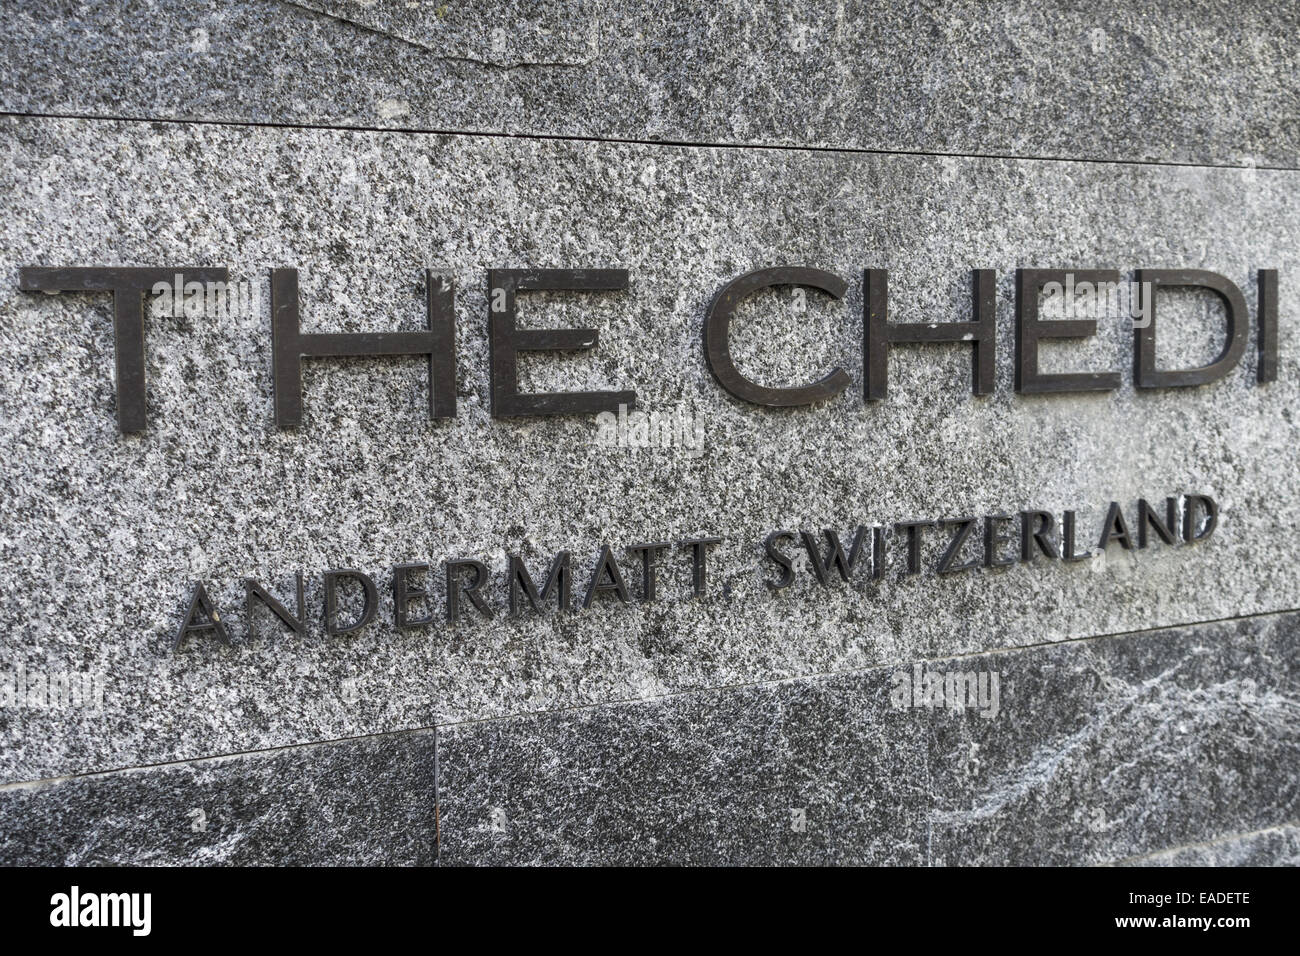 Le Chedi, cinq étoiles de classe supérieure, par l'investisseur Samih Sawiri, Andermatt, Uri, Suisse Banque D'Images